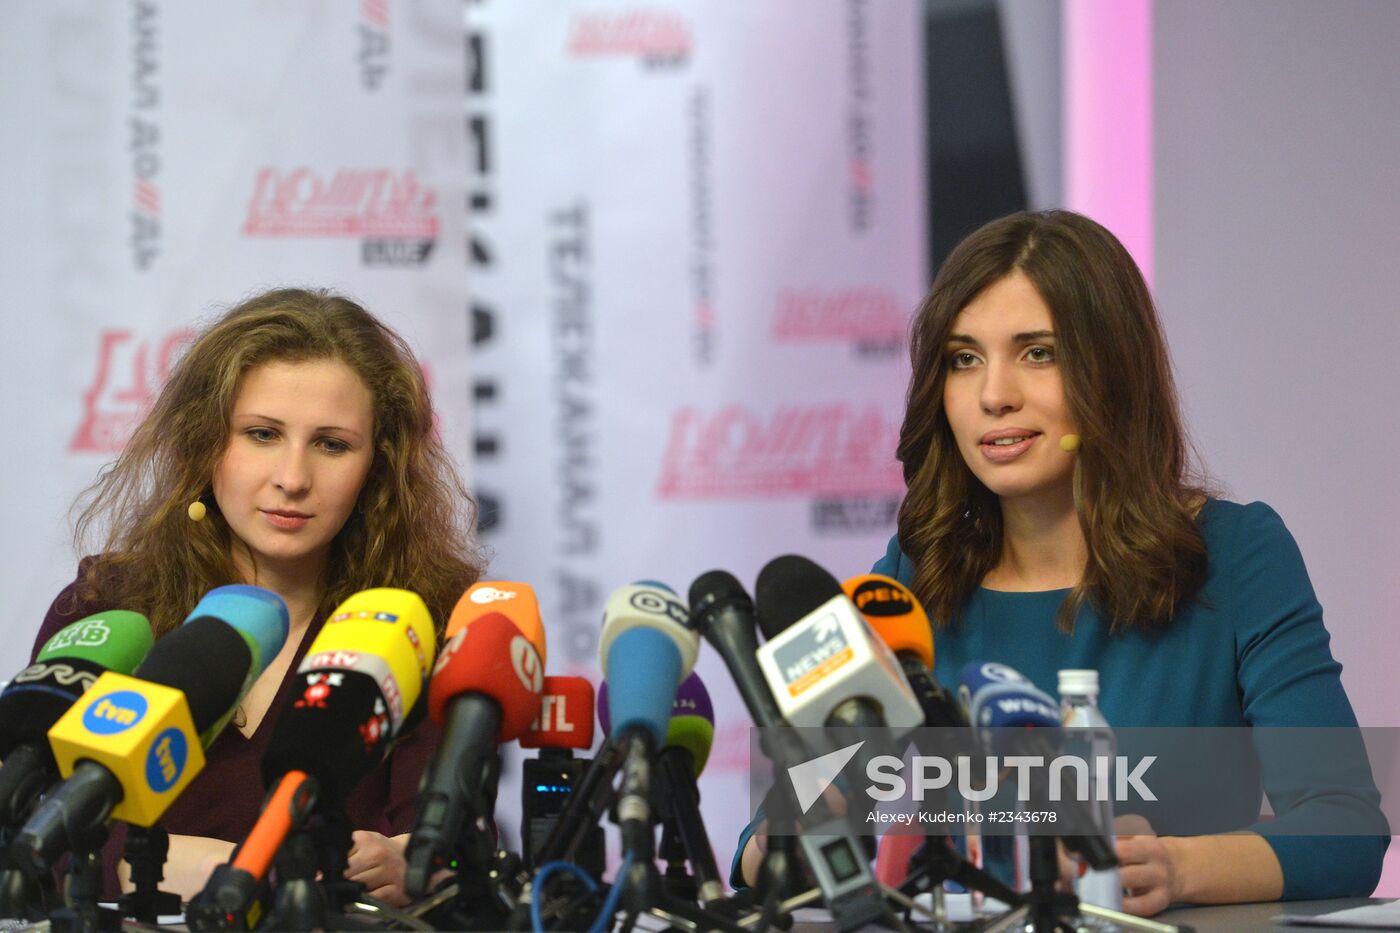 News conference with Maria Alyokhina and Nadezhda Tolokonnikova